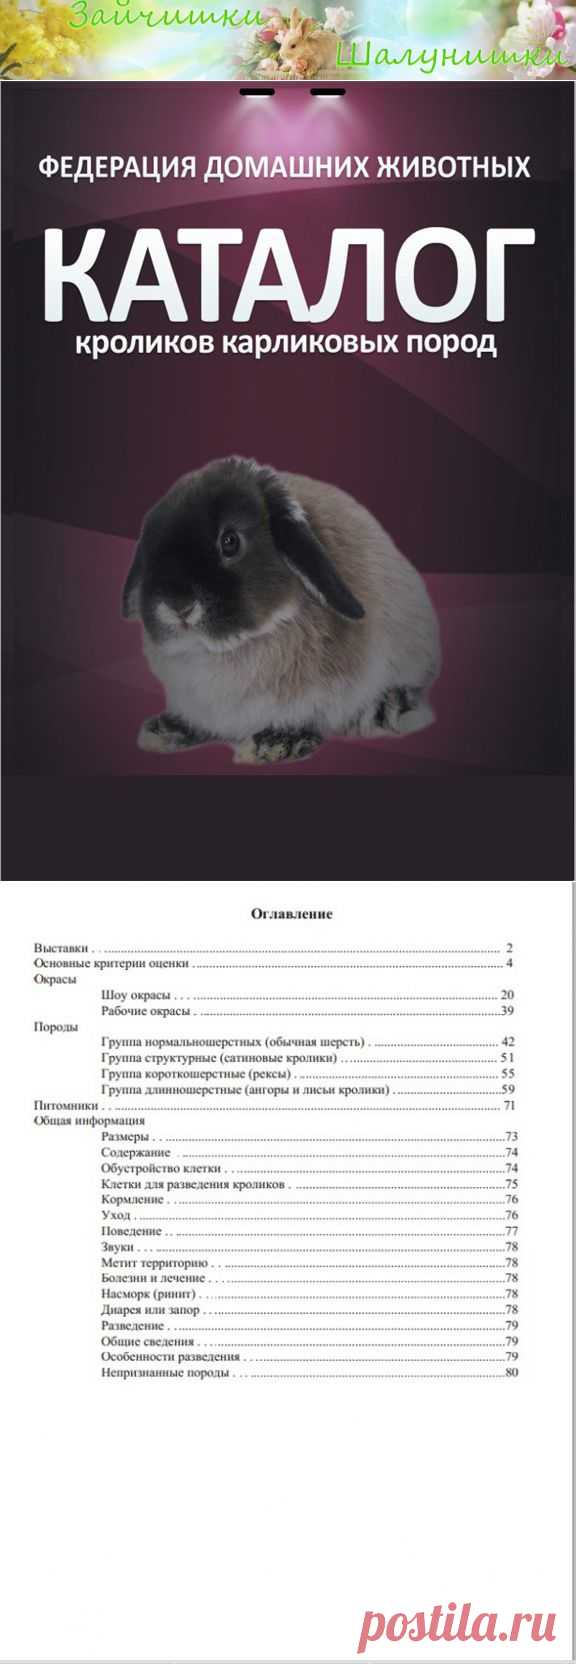 Каталог пород карликовых кроликов - Форум